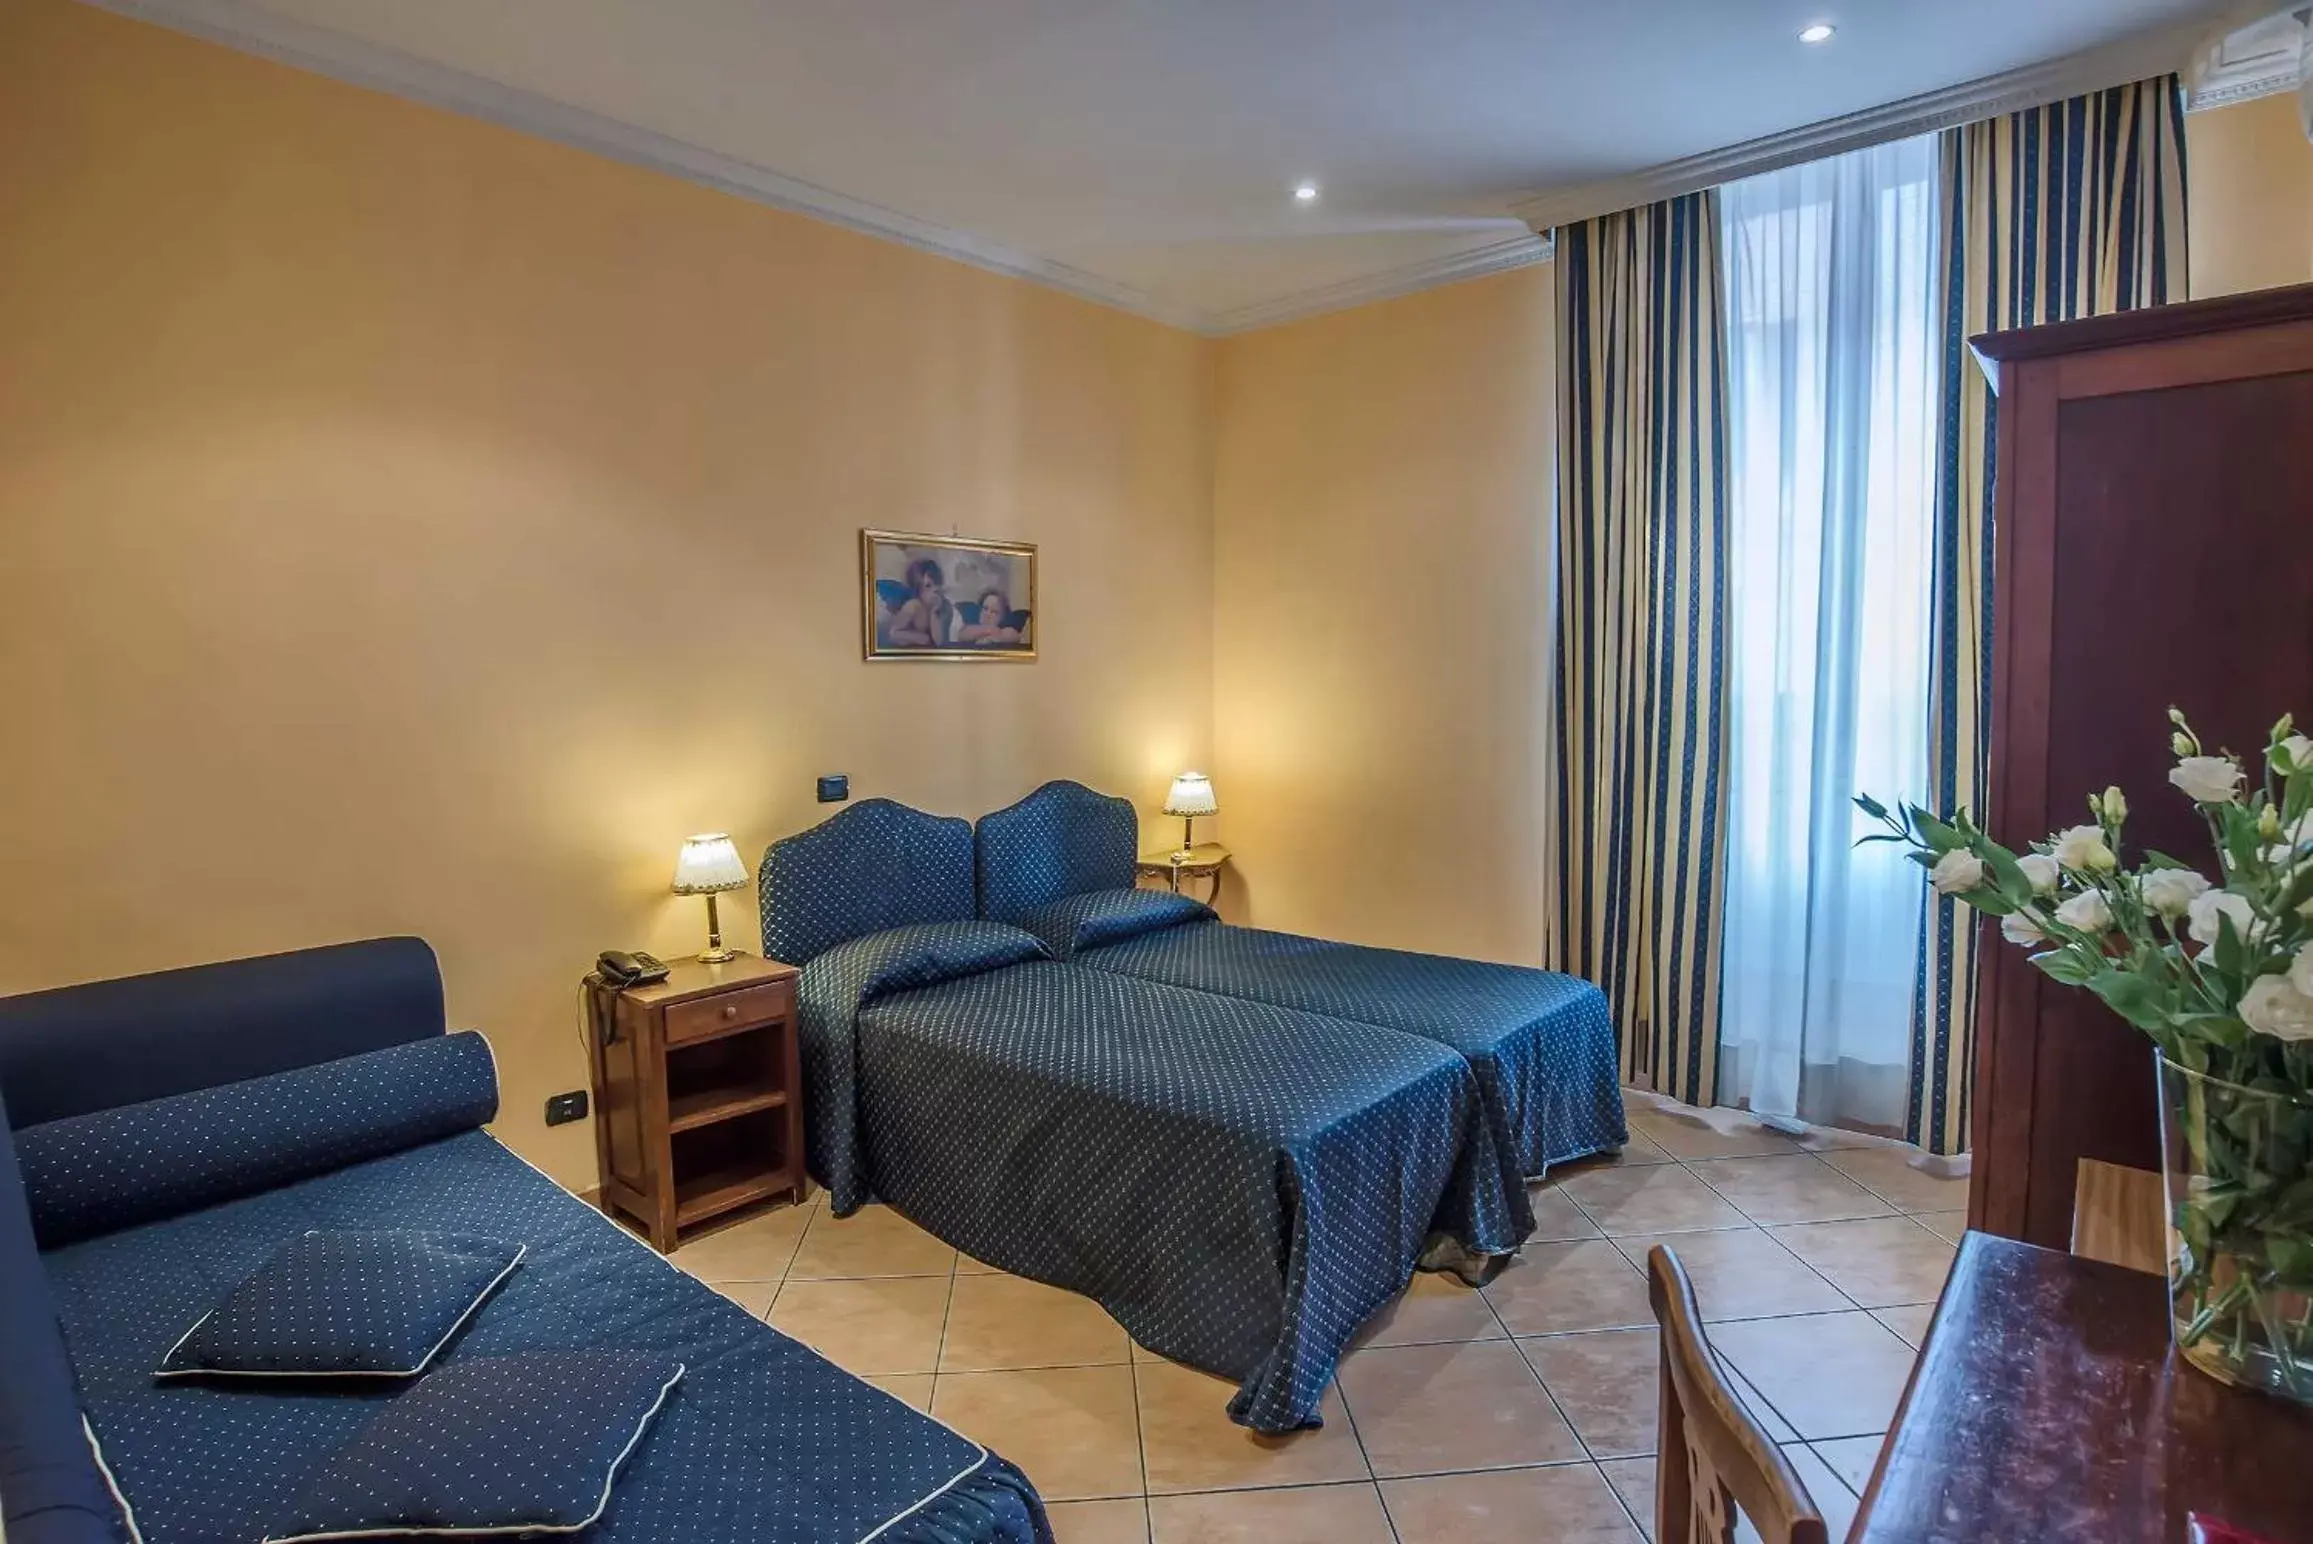 Bedroom in Hotel Caracciolo